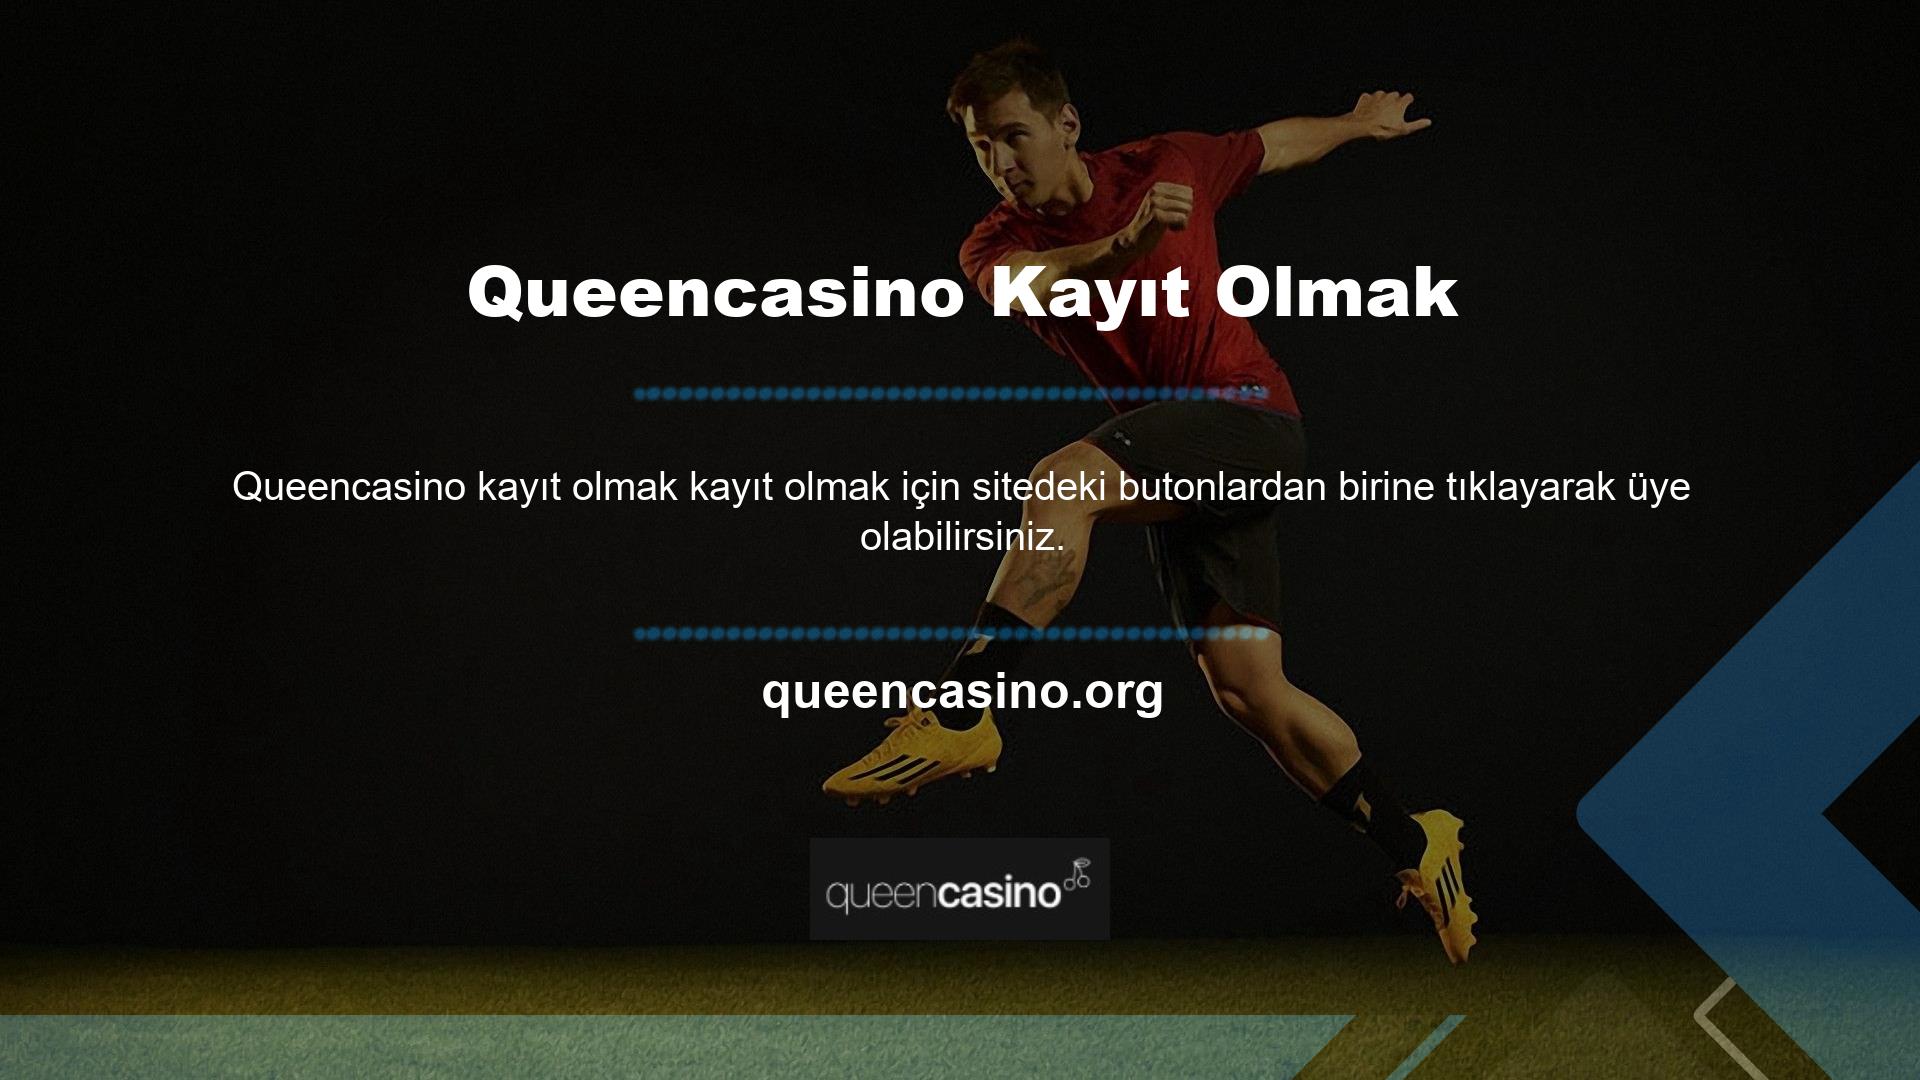 Queencasino bahis sitesi Türkiye pazarındaki en güvenilir yurtdışı bahis sitelerinden biridir